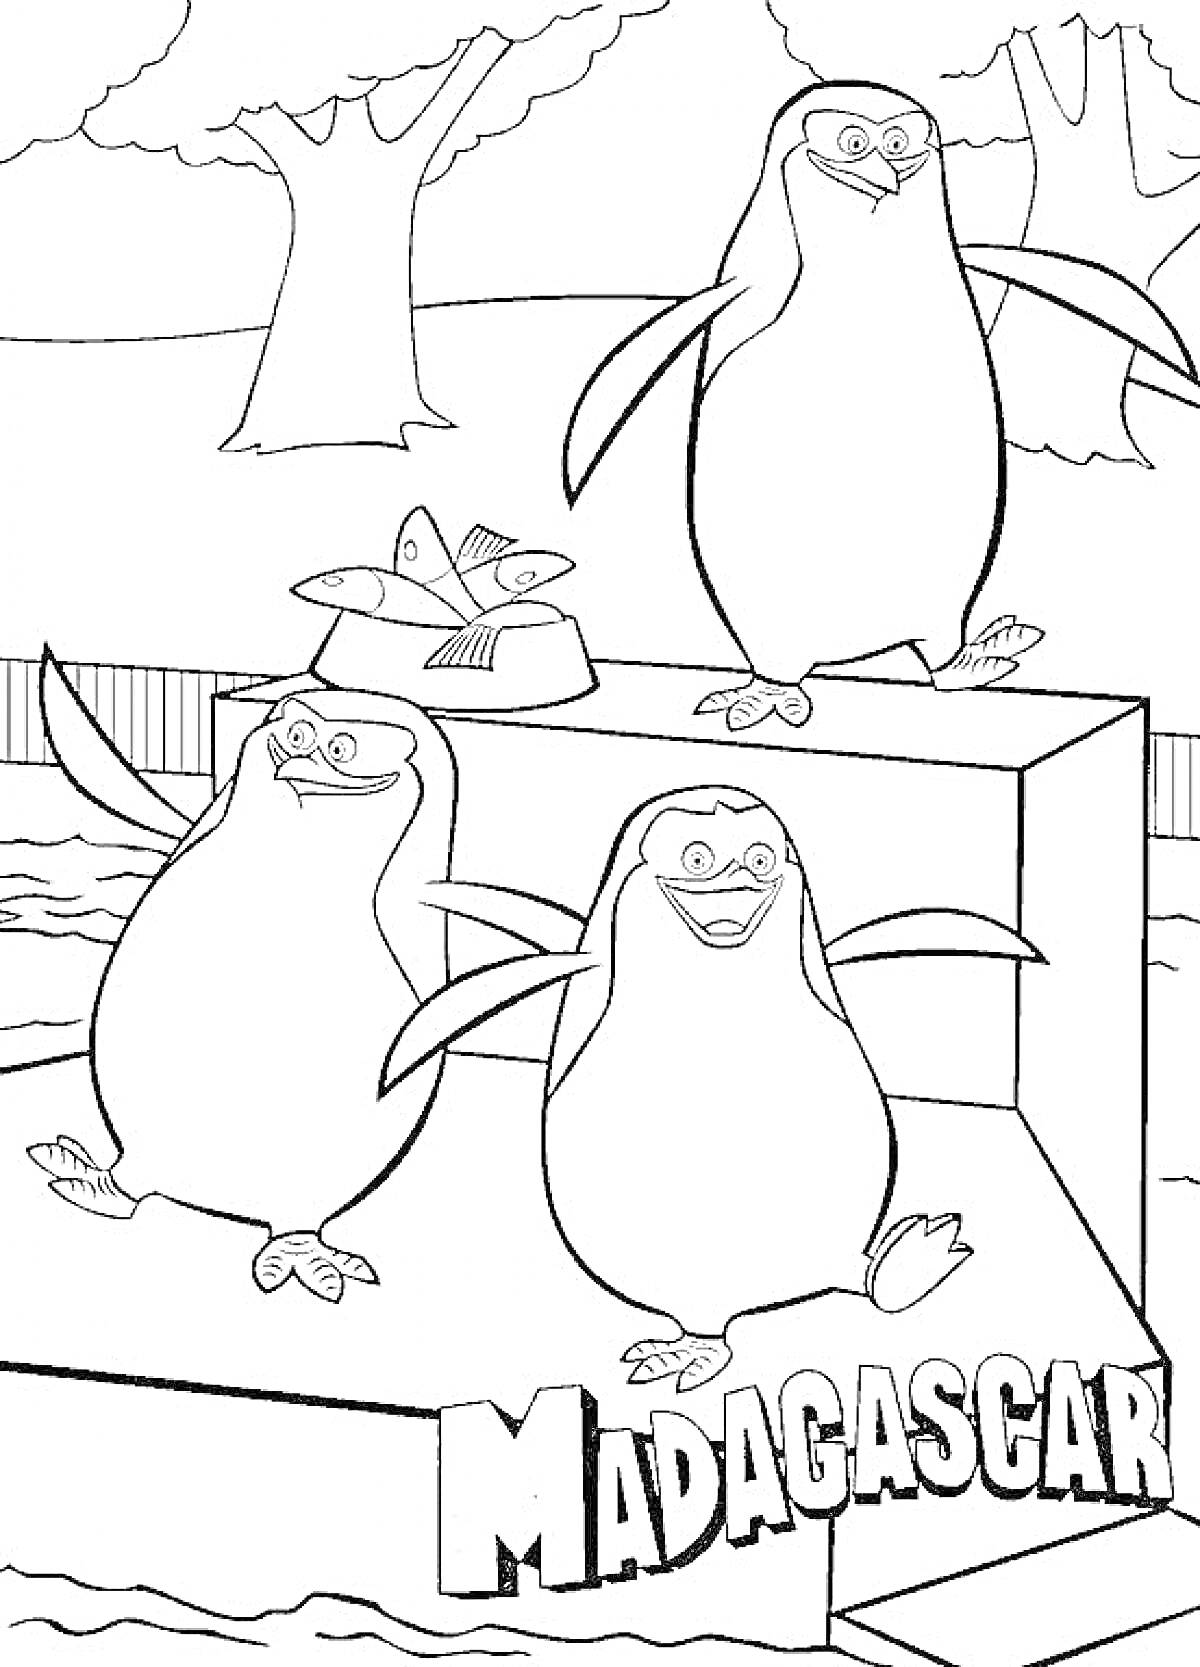 Раскраска Пингвины на платформе в окружении деревьев и ограждения с надписью 